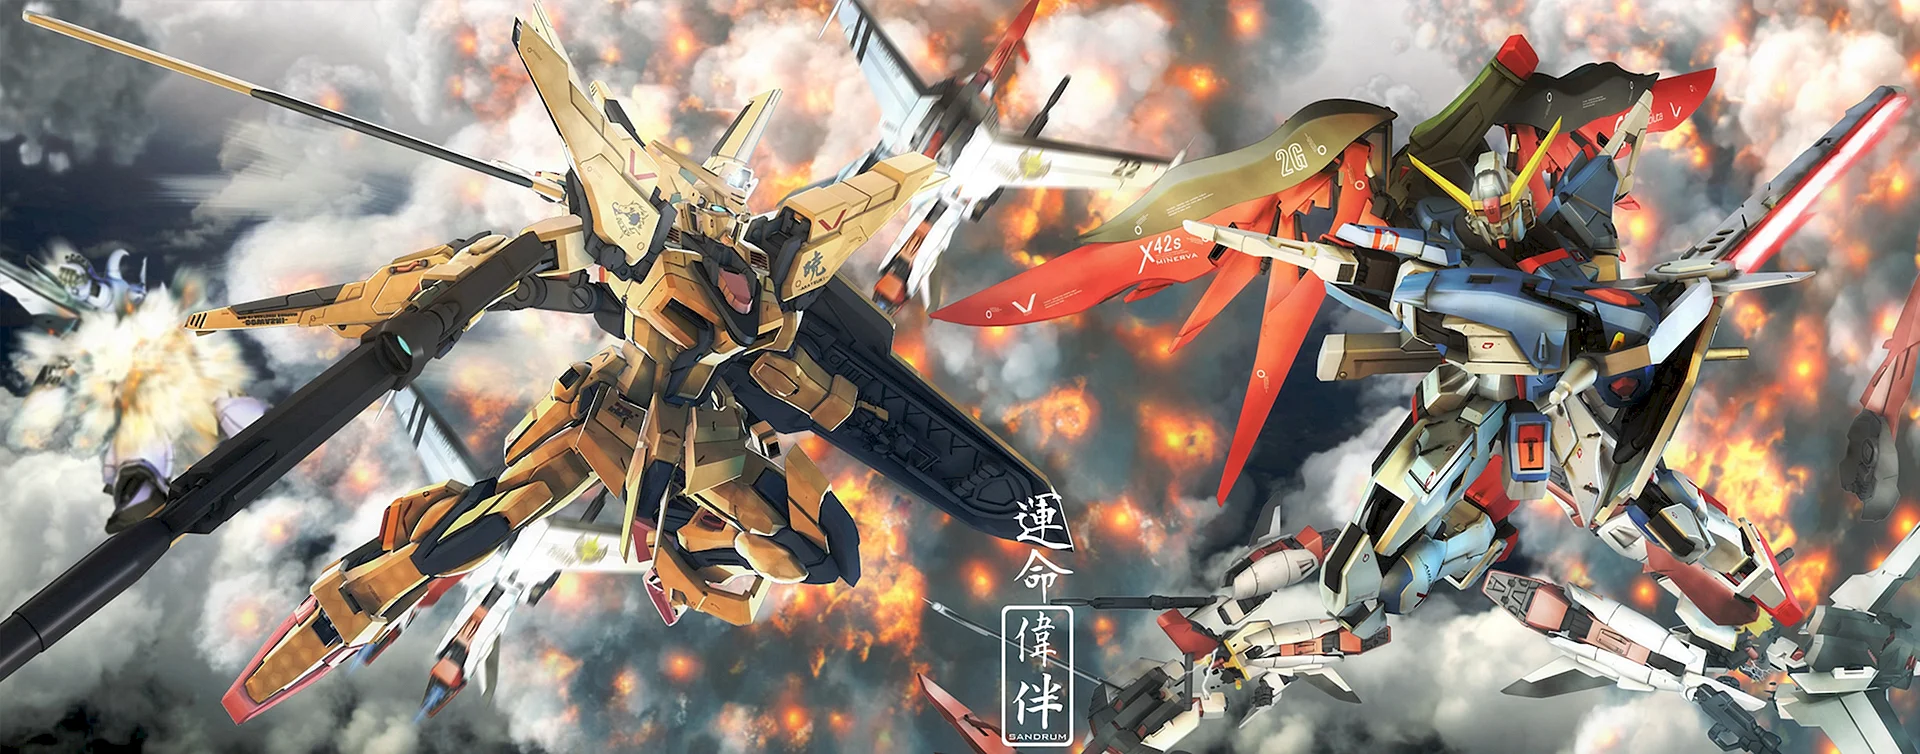 Gundam Thunderbolt Artwork Wallpaper